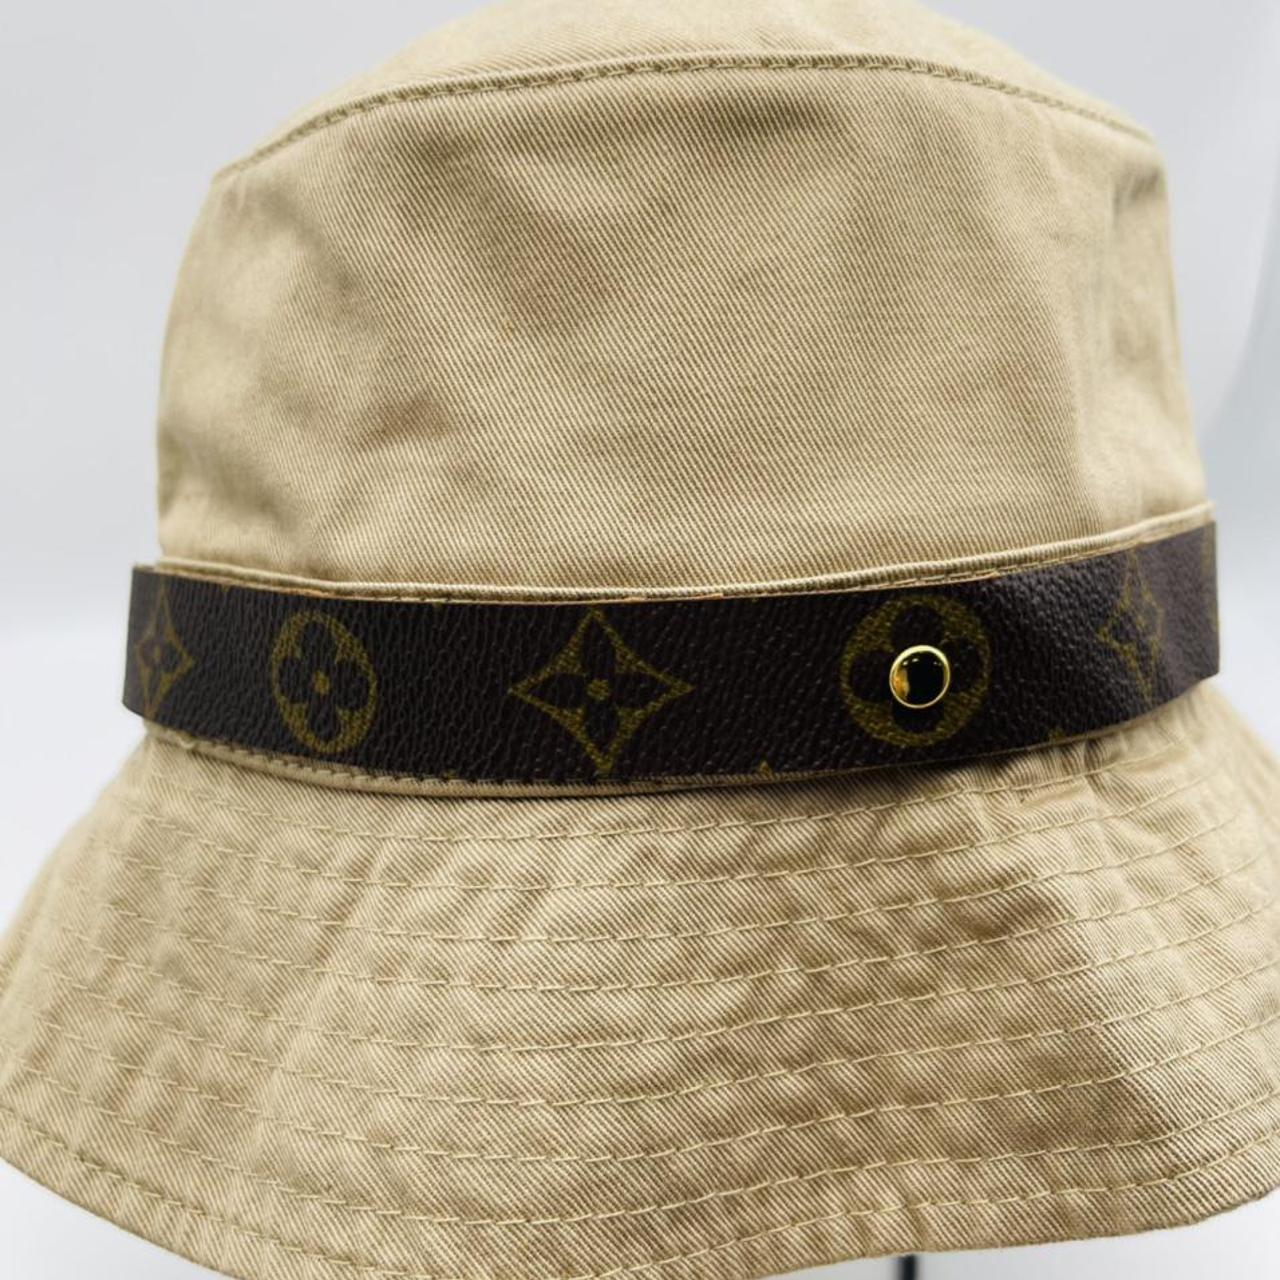 Upcycled LV Hat Band & Hat Set - ShopperBoard